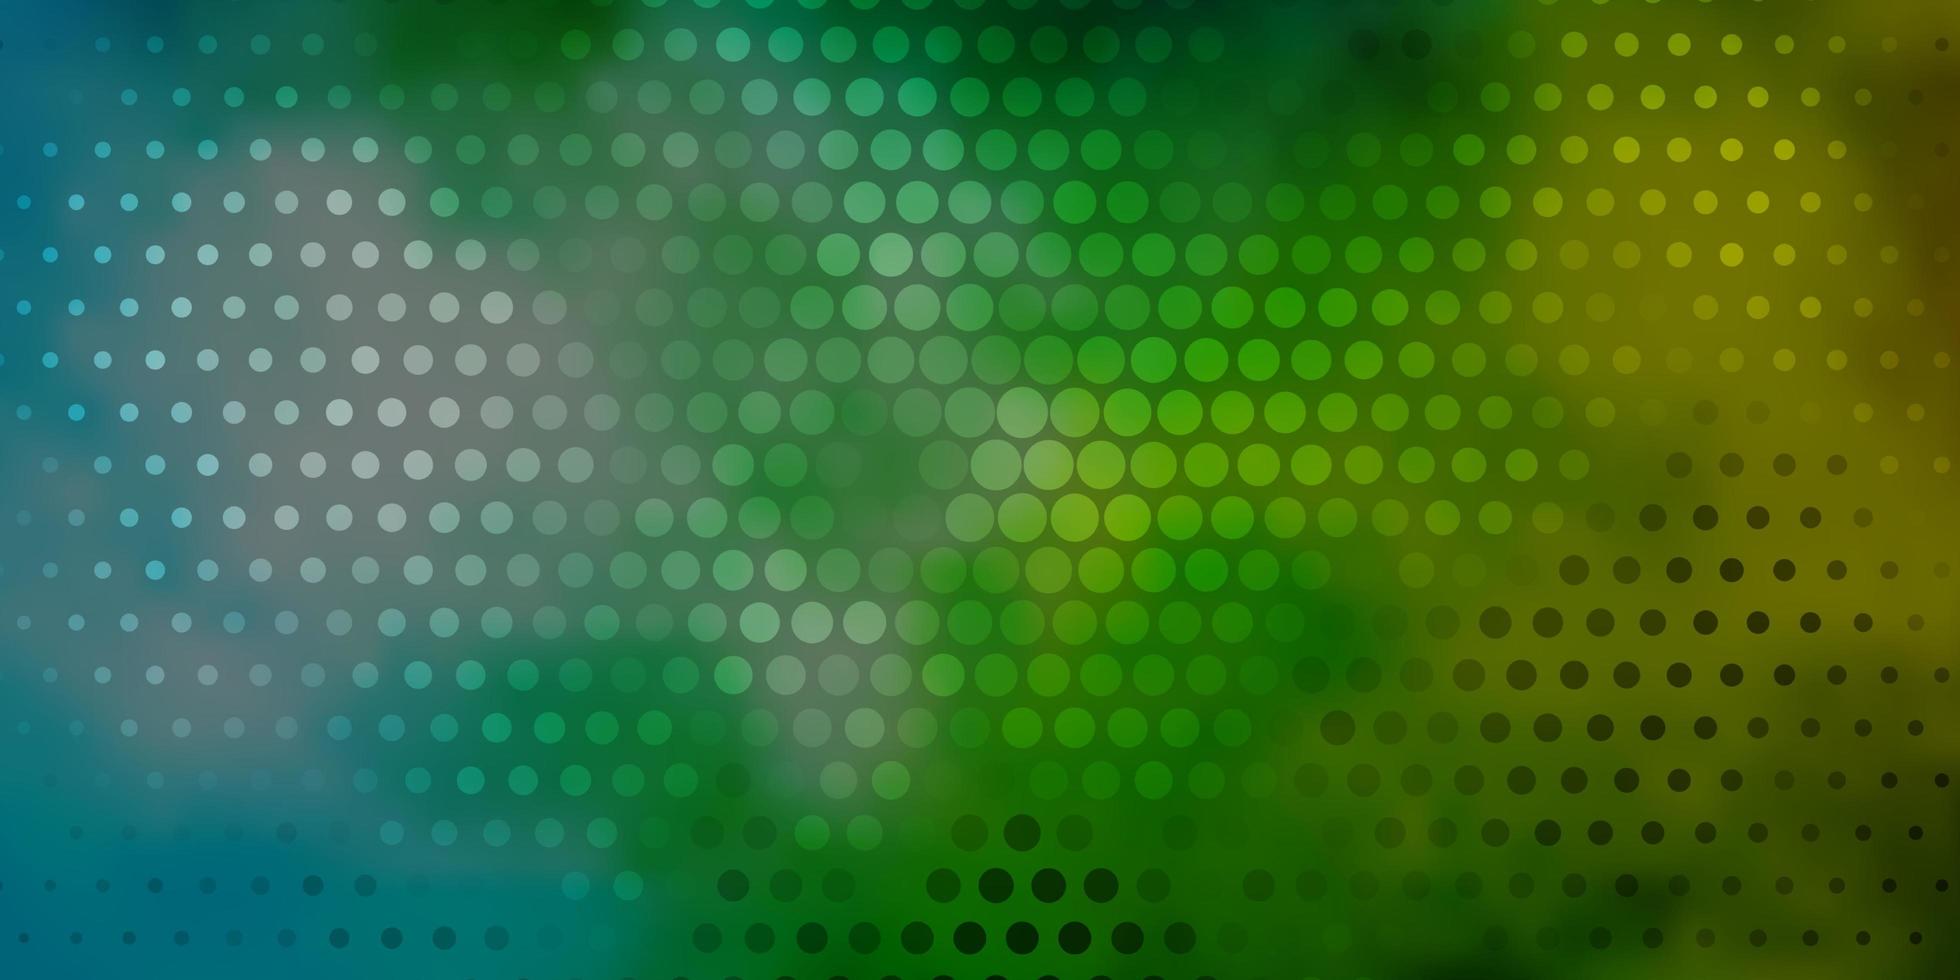 hellblaue, grüne Vektortextur mit Scheiben. vektor